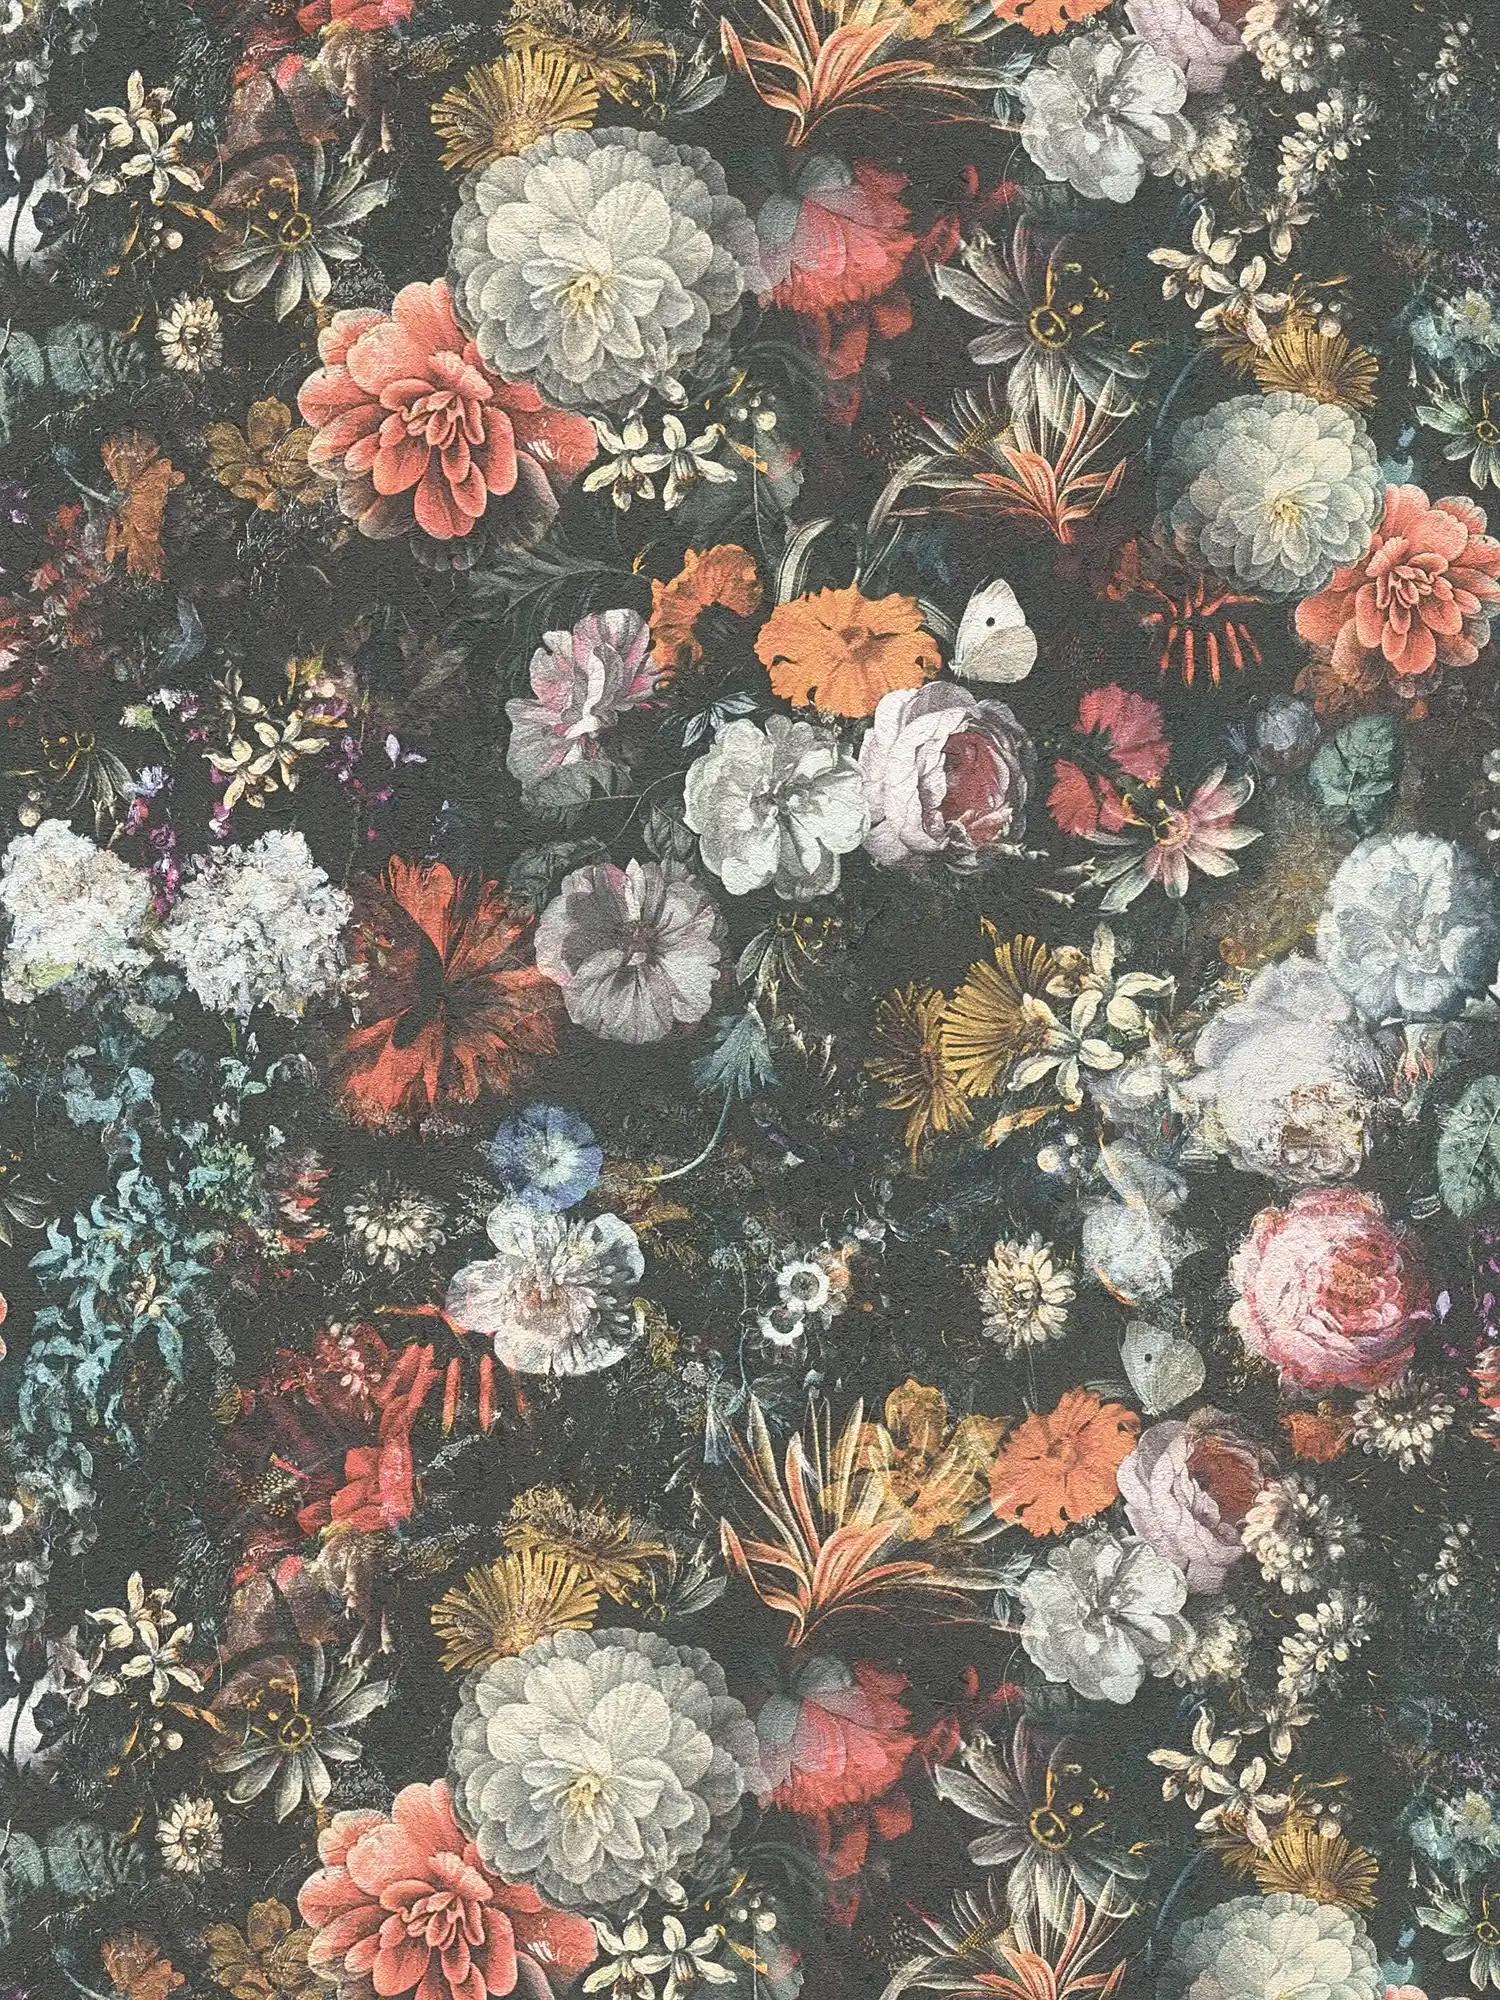         Blumen Tapete Vintage Design mit Rosen – Bunt, Grau, Orange
    